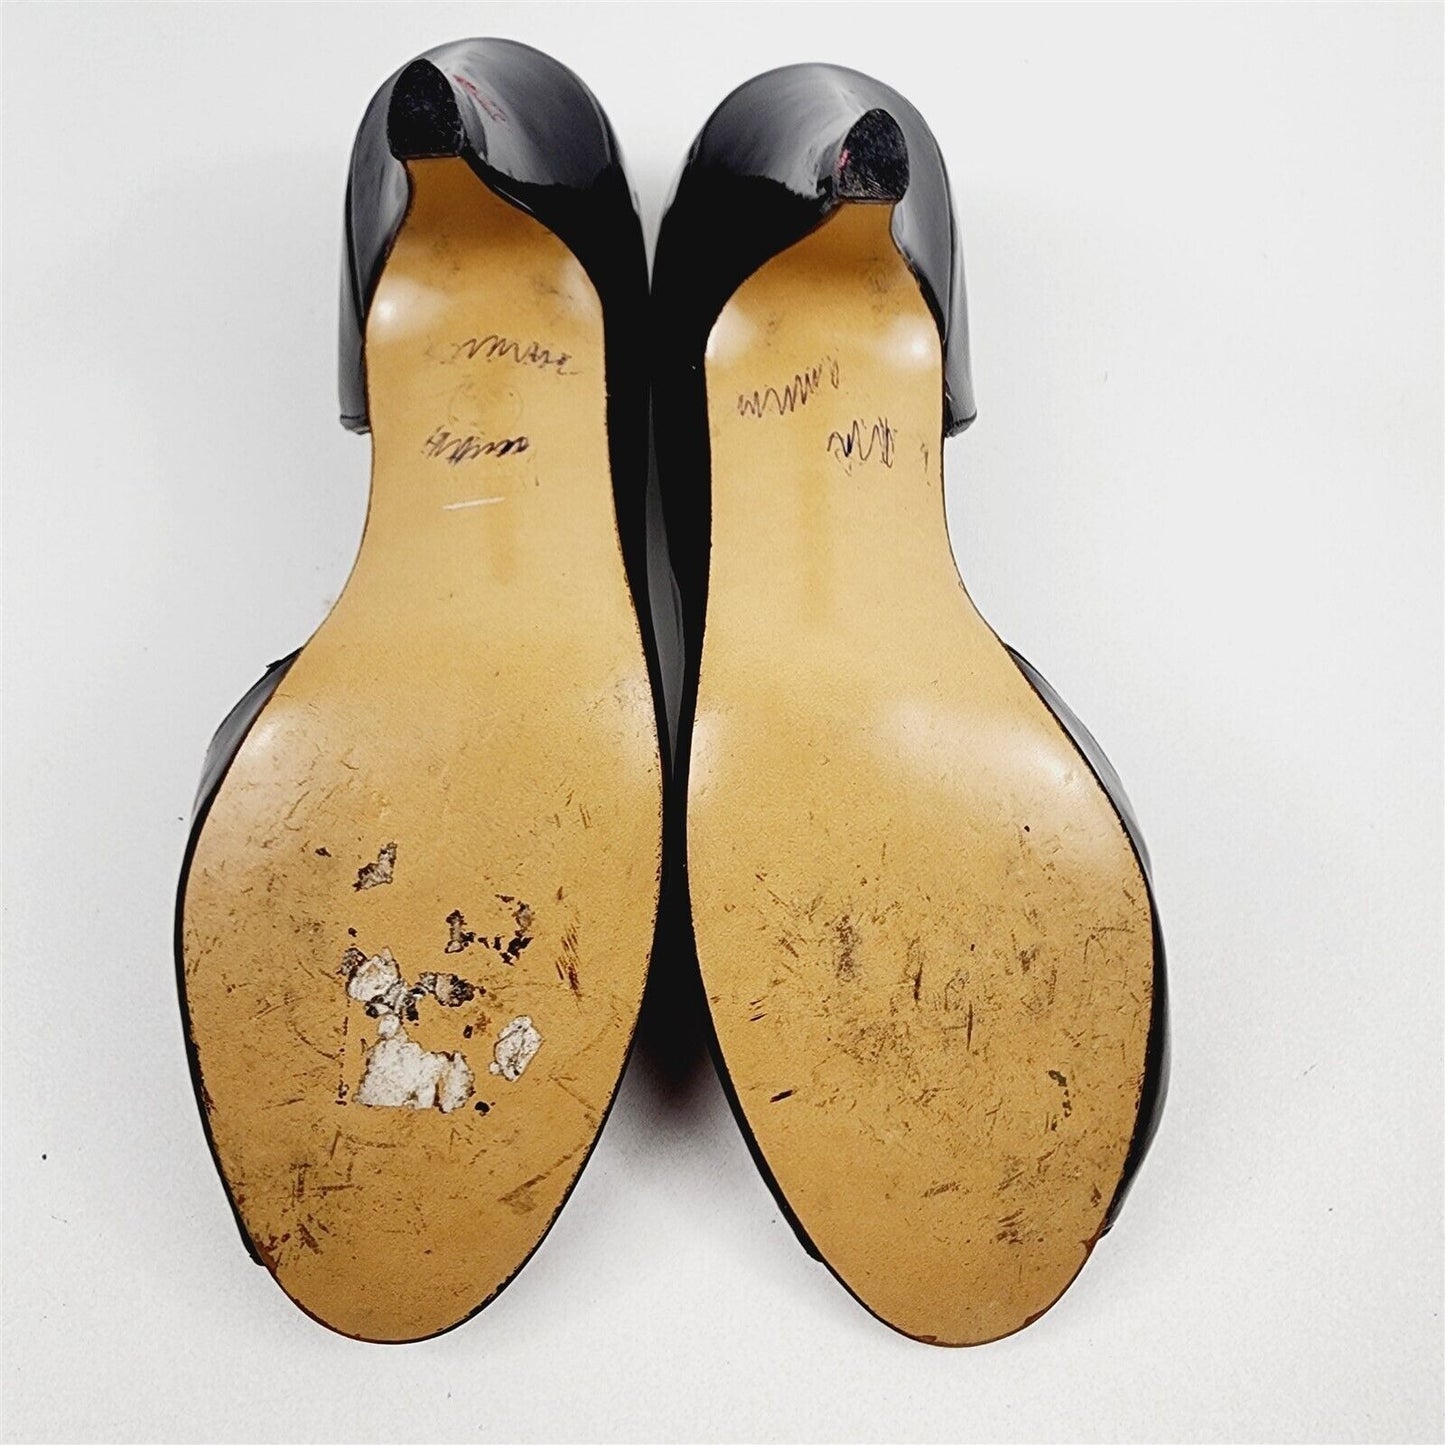 Vintage FanFares Black Peep Toe Pumps Heels Shoes Womens Size 7